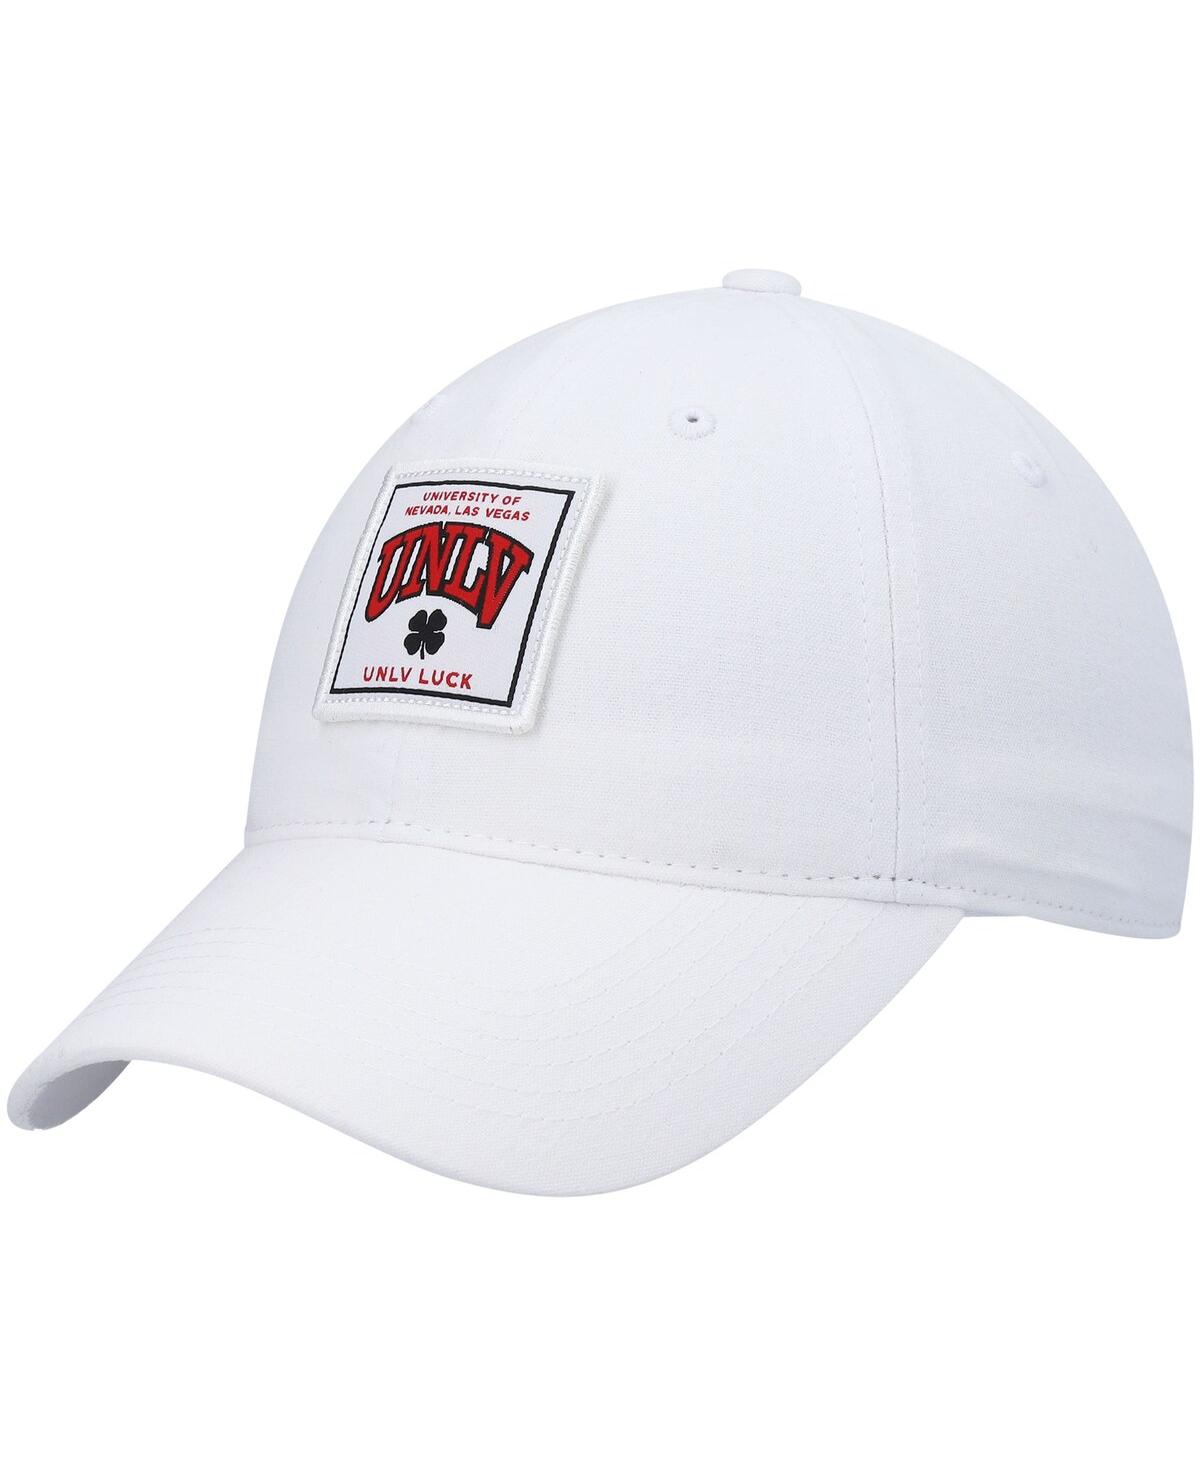 Men's White Unlv Rebels Dream Adjustable Hat - White